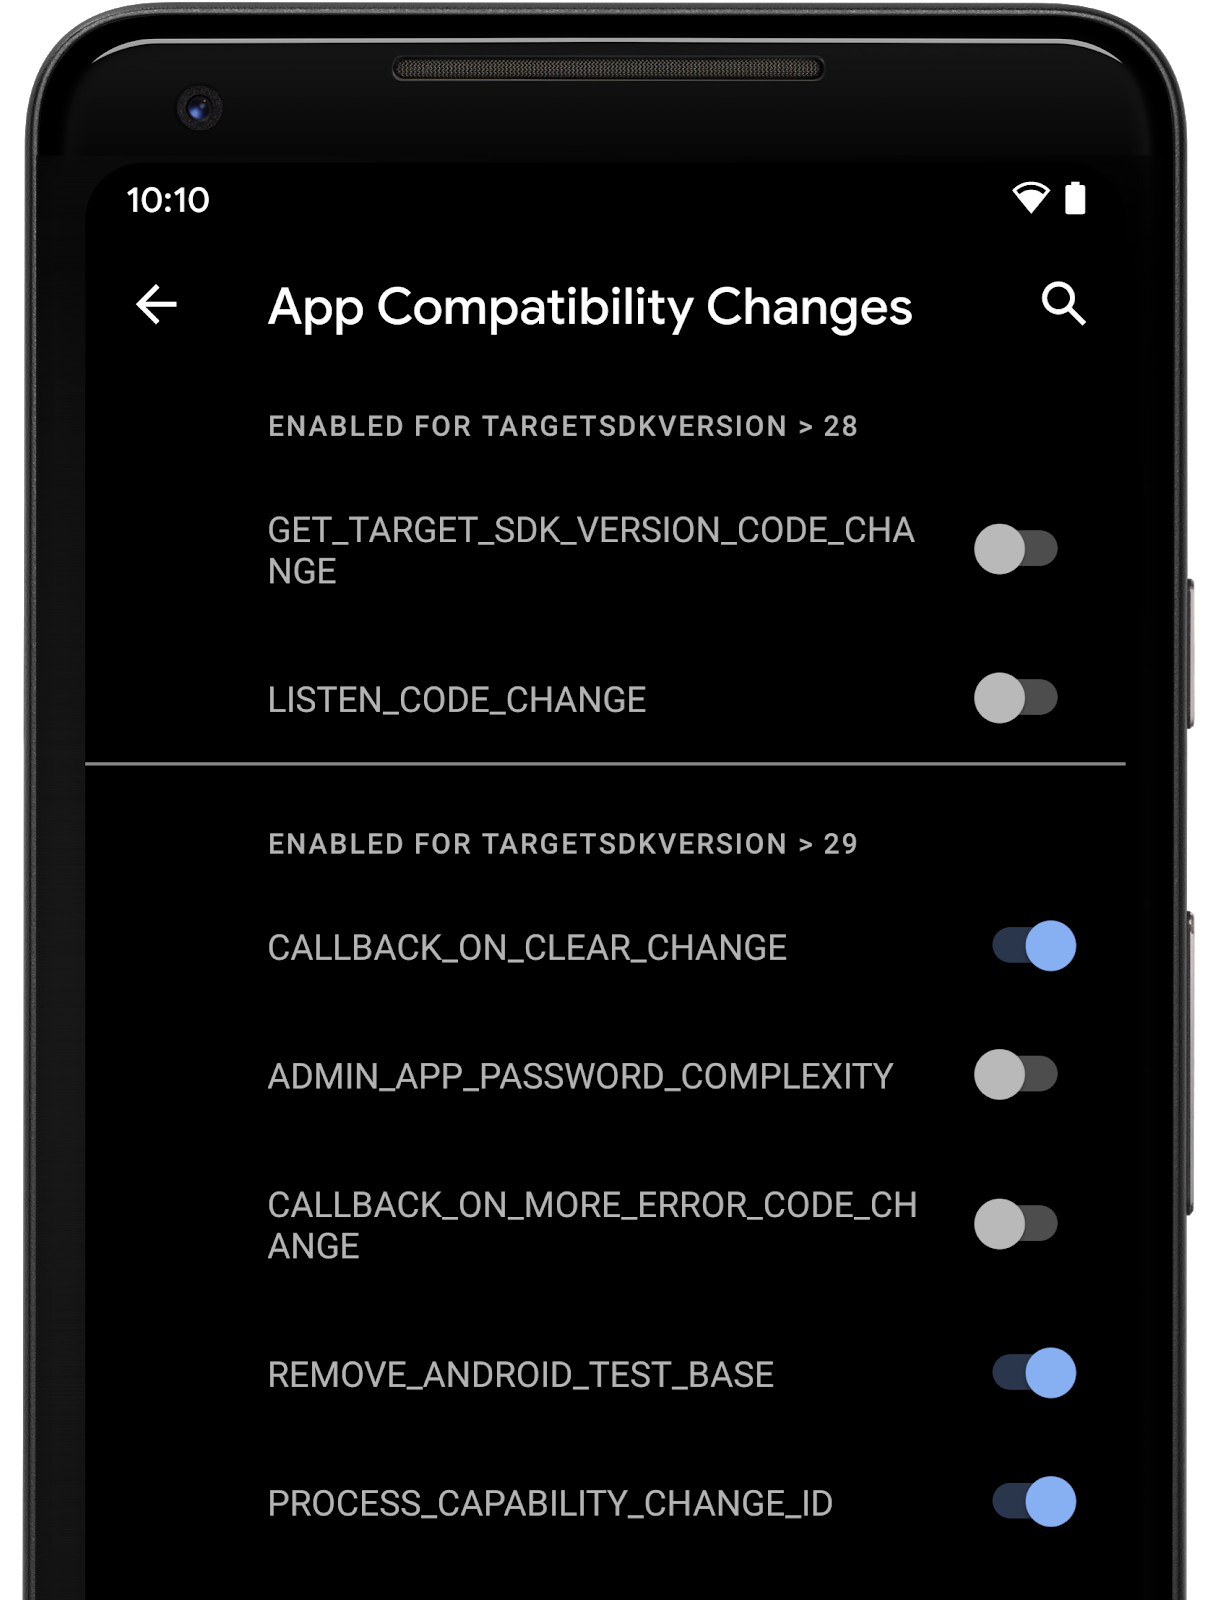 Funciones de compatibilidad de la app que se pueden activar o desactivar en las Opciones para desarrolladores